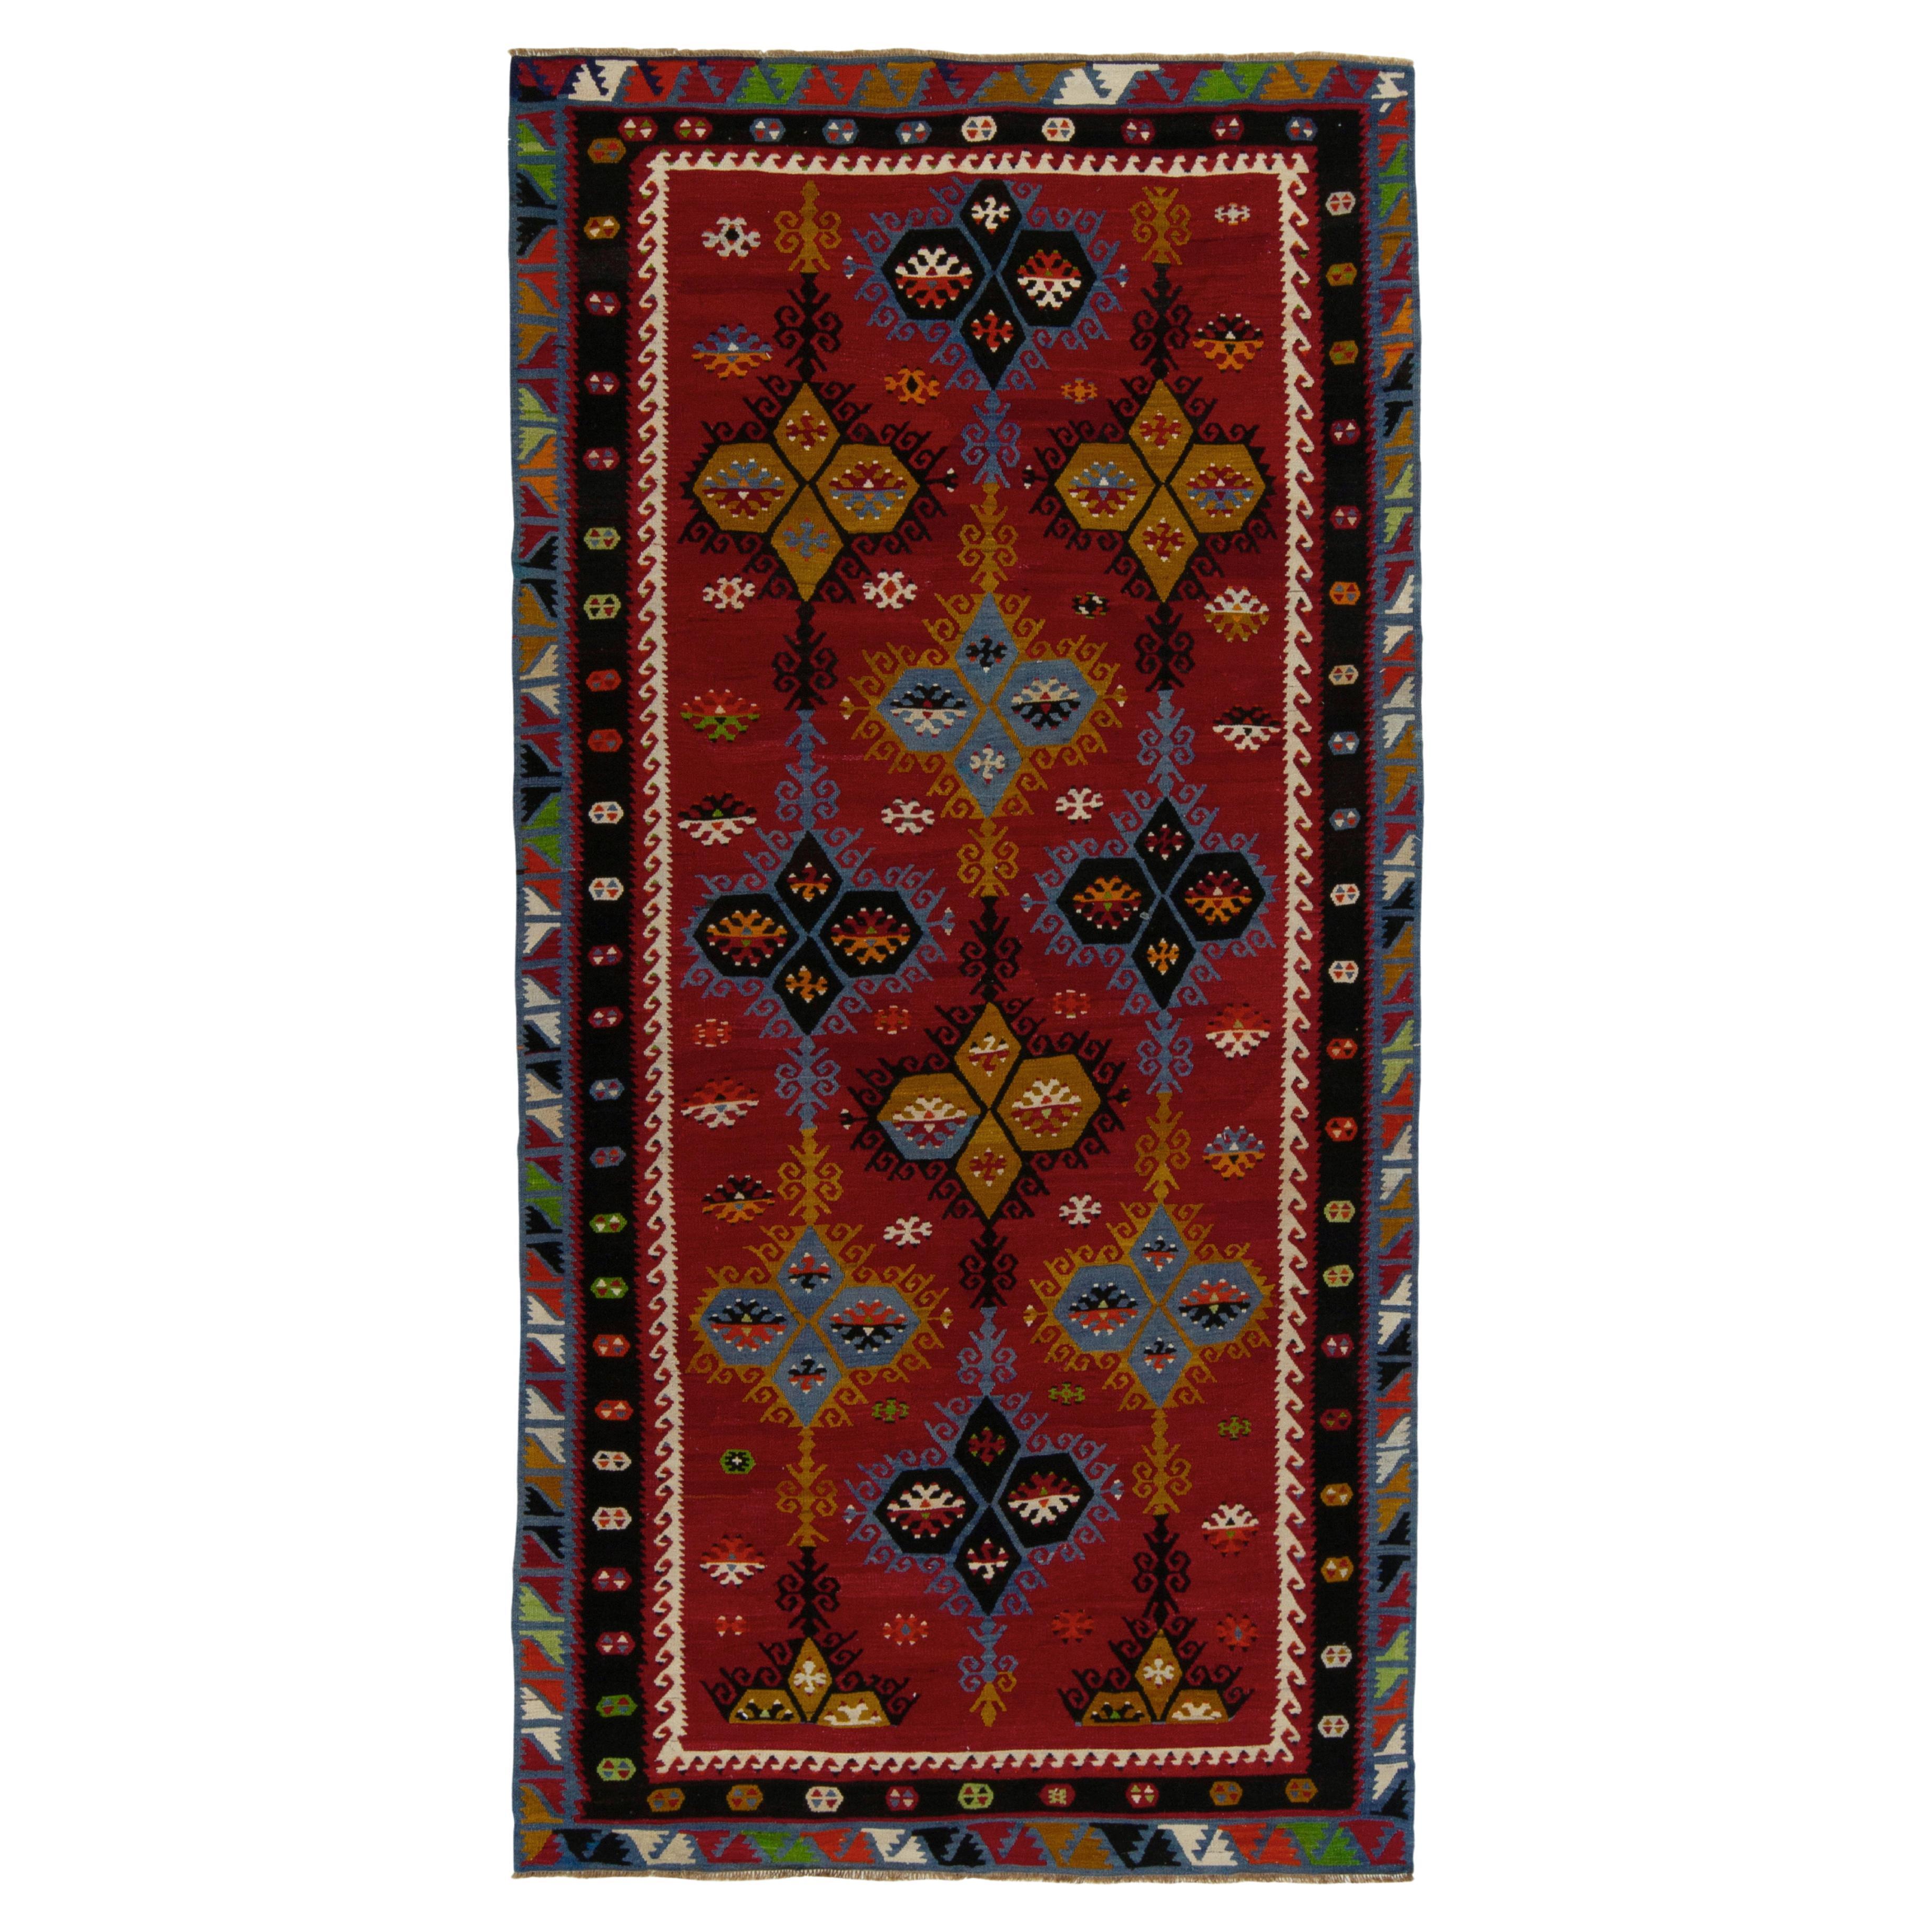 Handgewebter Vintage-Stammes-Kelim in Rot mit geometrischem Muster von Teppich & Kelim